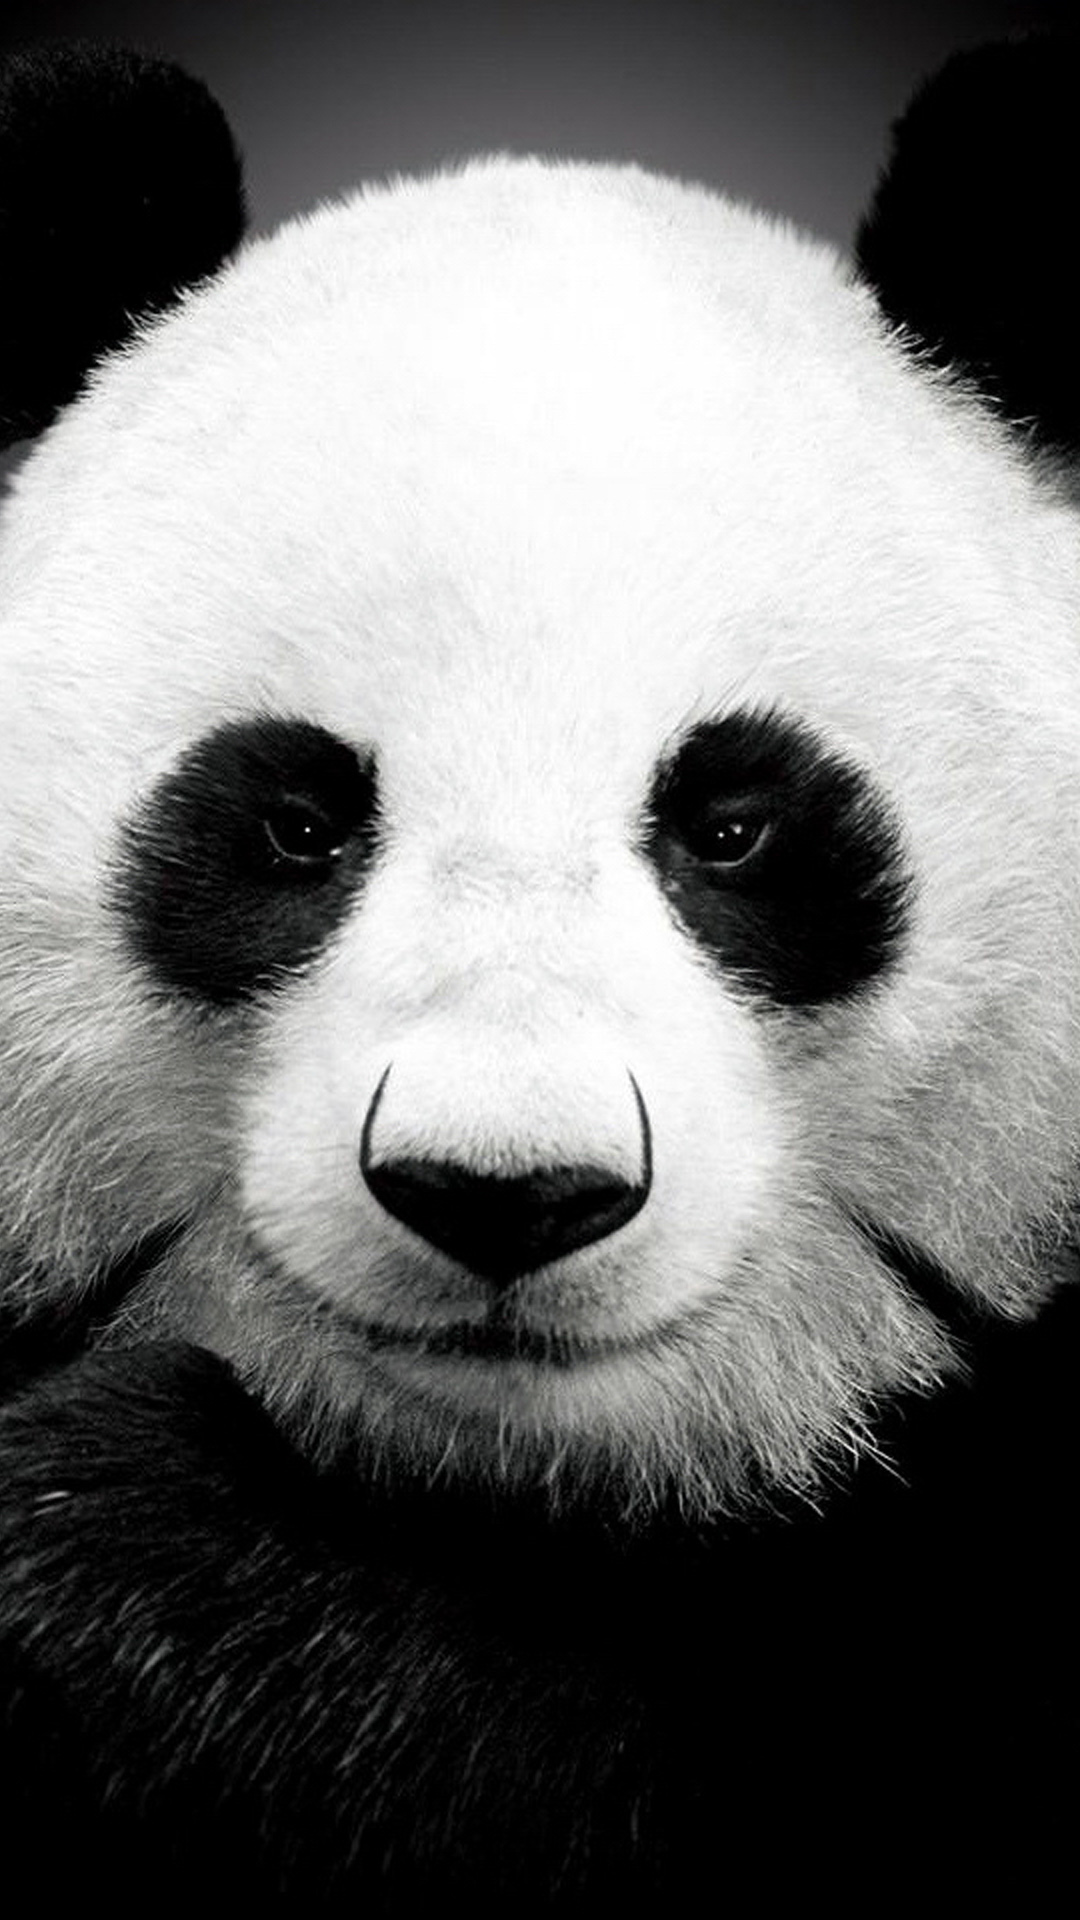 panda bär tapete,panda,gesicht,weiß,landtier,schwarz